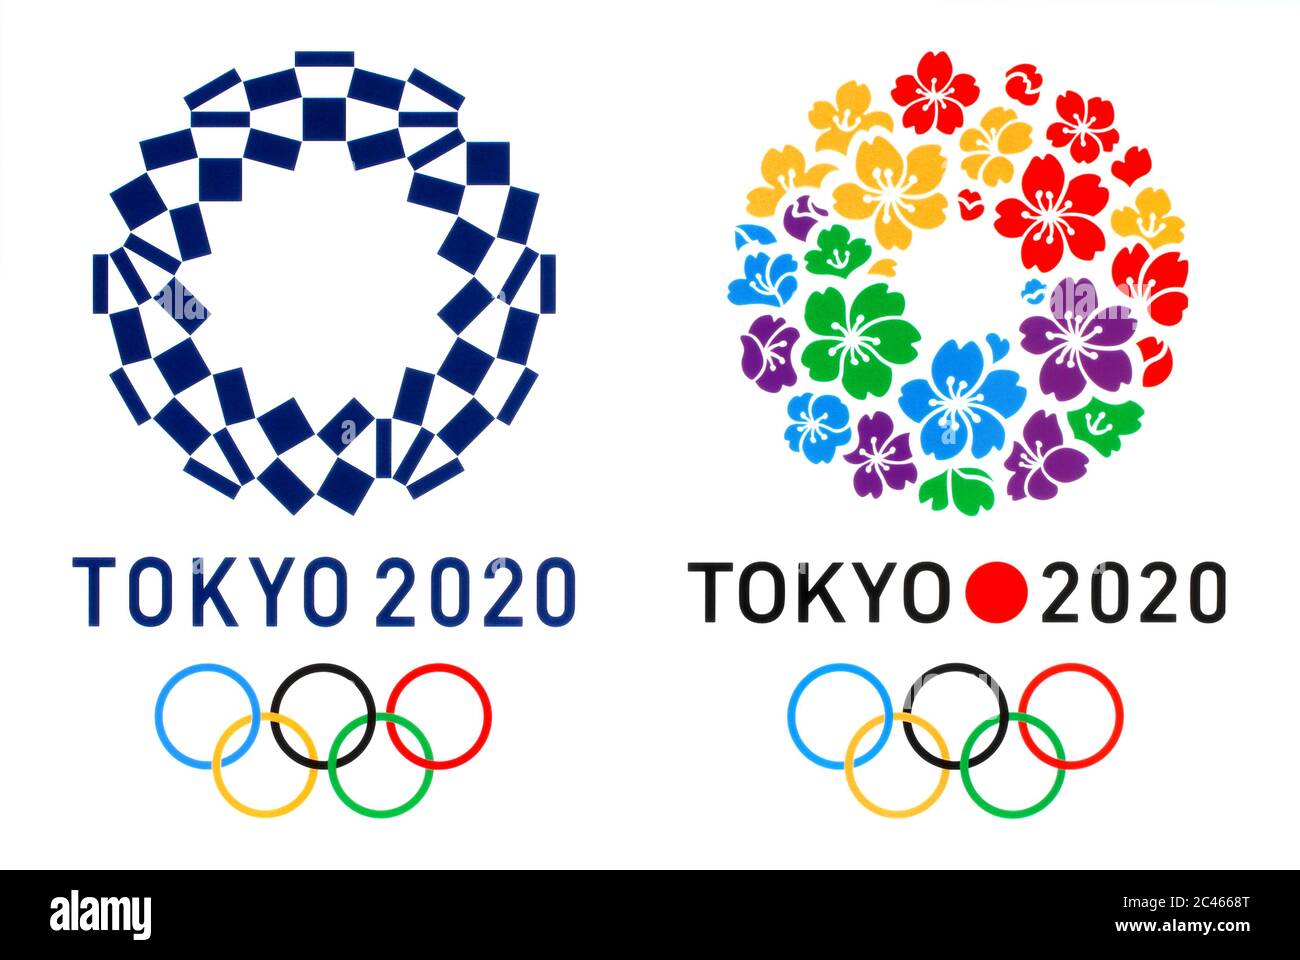 Kiev, Ucraina - 04 ottobre 2019: Logo ufficiale dei Giochi Olimpici estivi di Tokyo del 2020 e logo della Tokyo Candidate City, stampato su carta Foto Stock